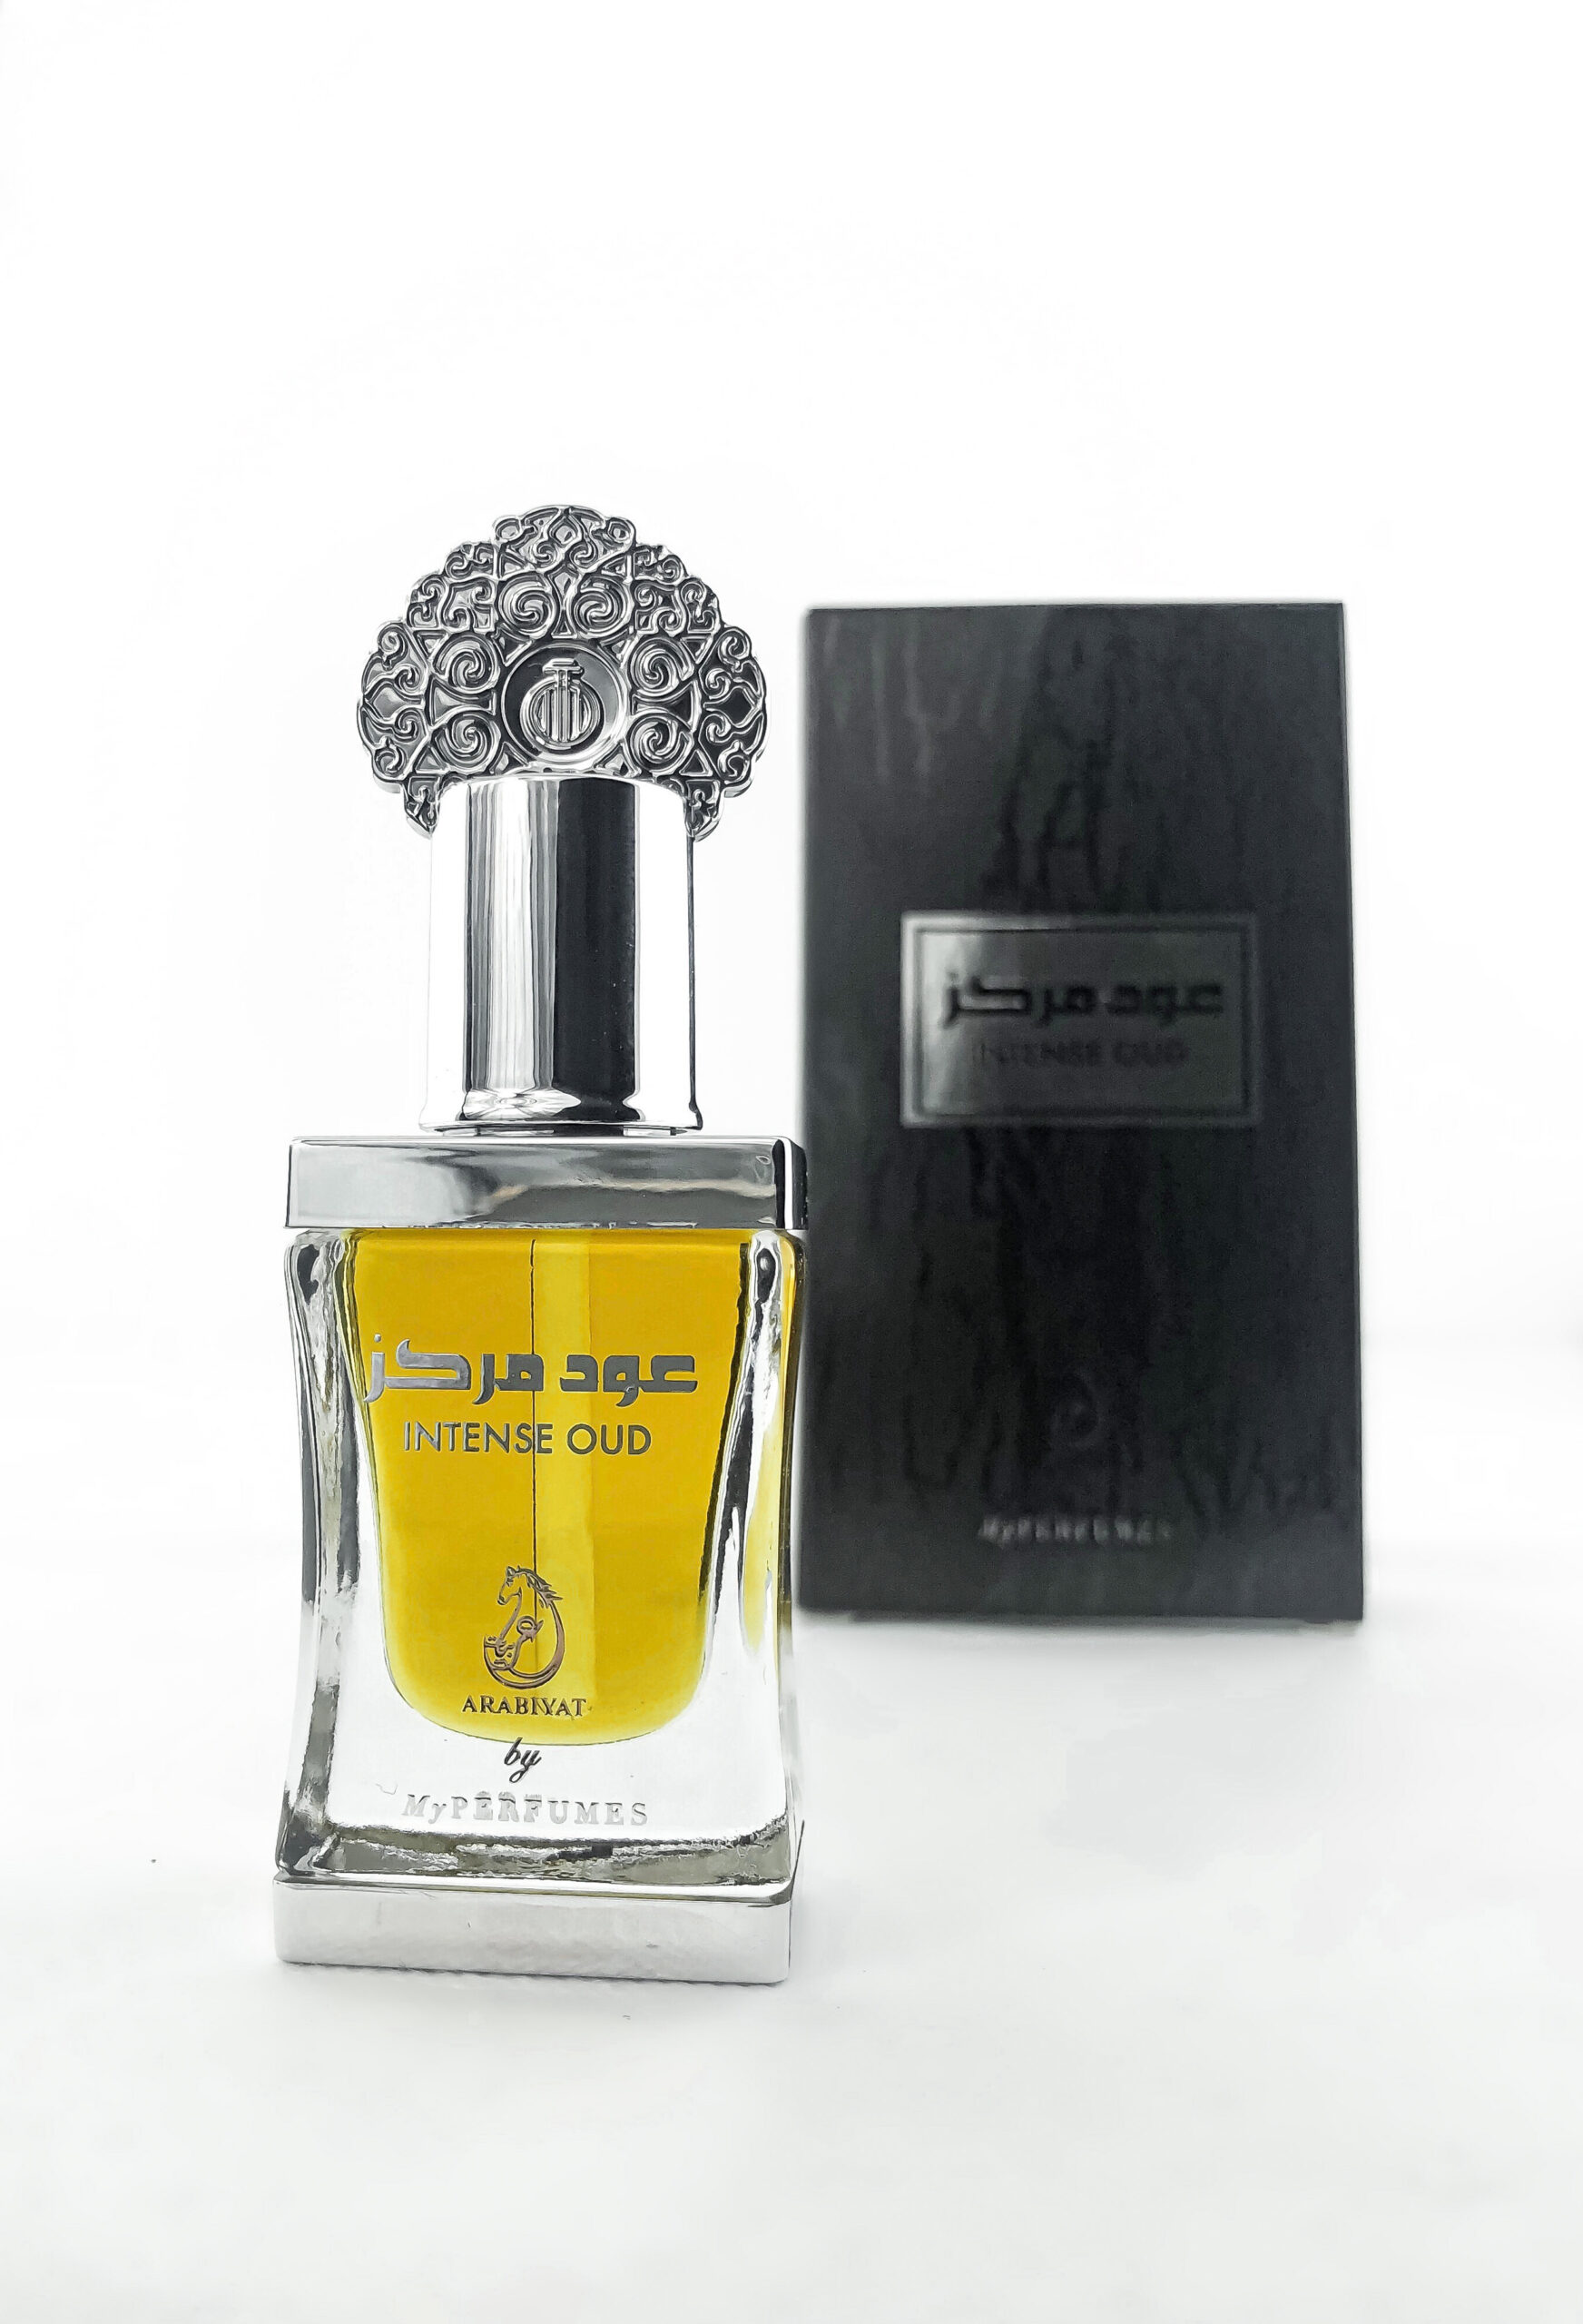 Arabiyat Intense Oud by My Perfumes - Buy online